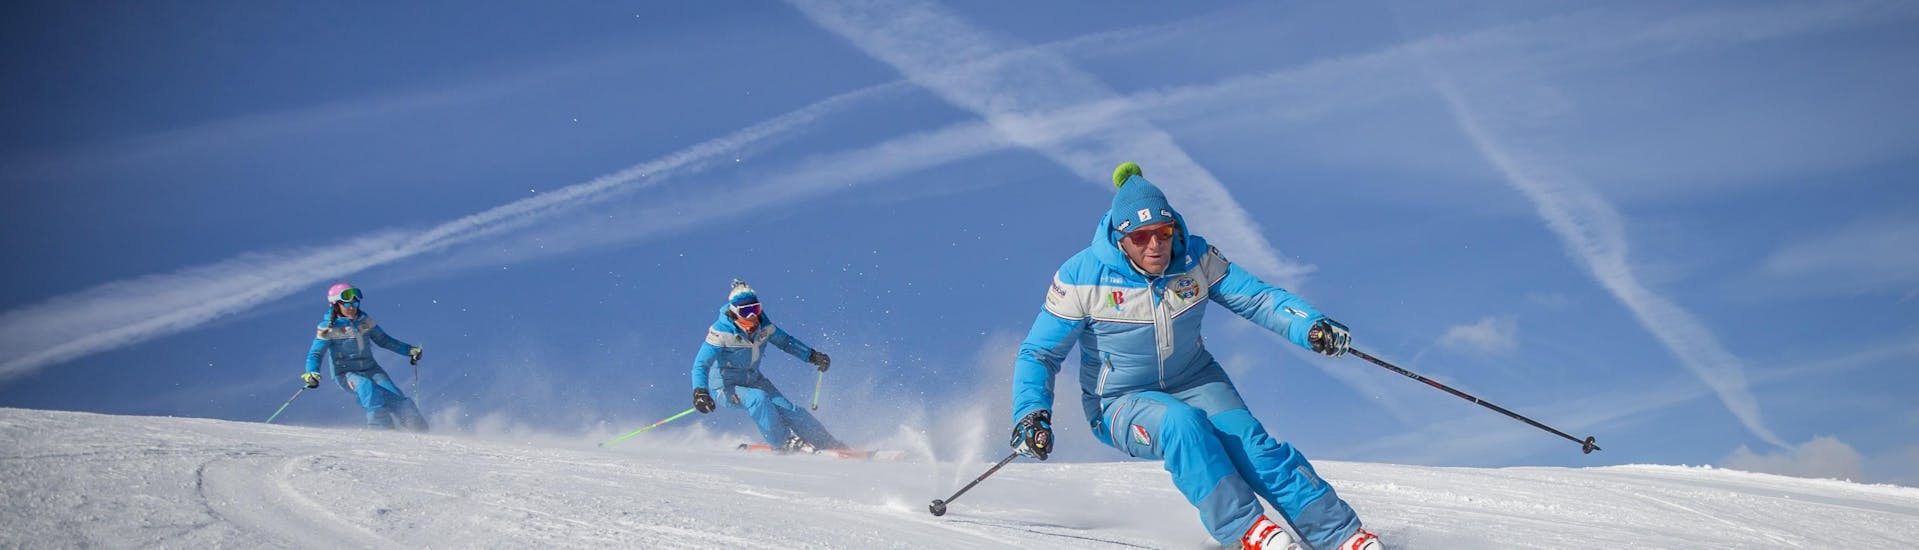 Les moniteurs de ski s'entraînent avant des cours particuliers de ski pour adultes de tous niveaux à Sauze d'Oulx.